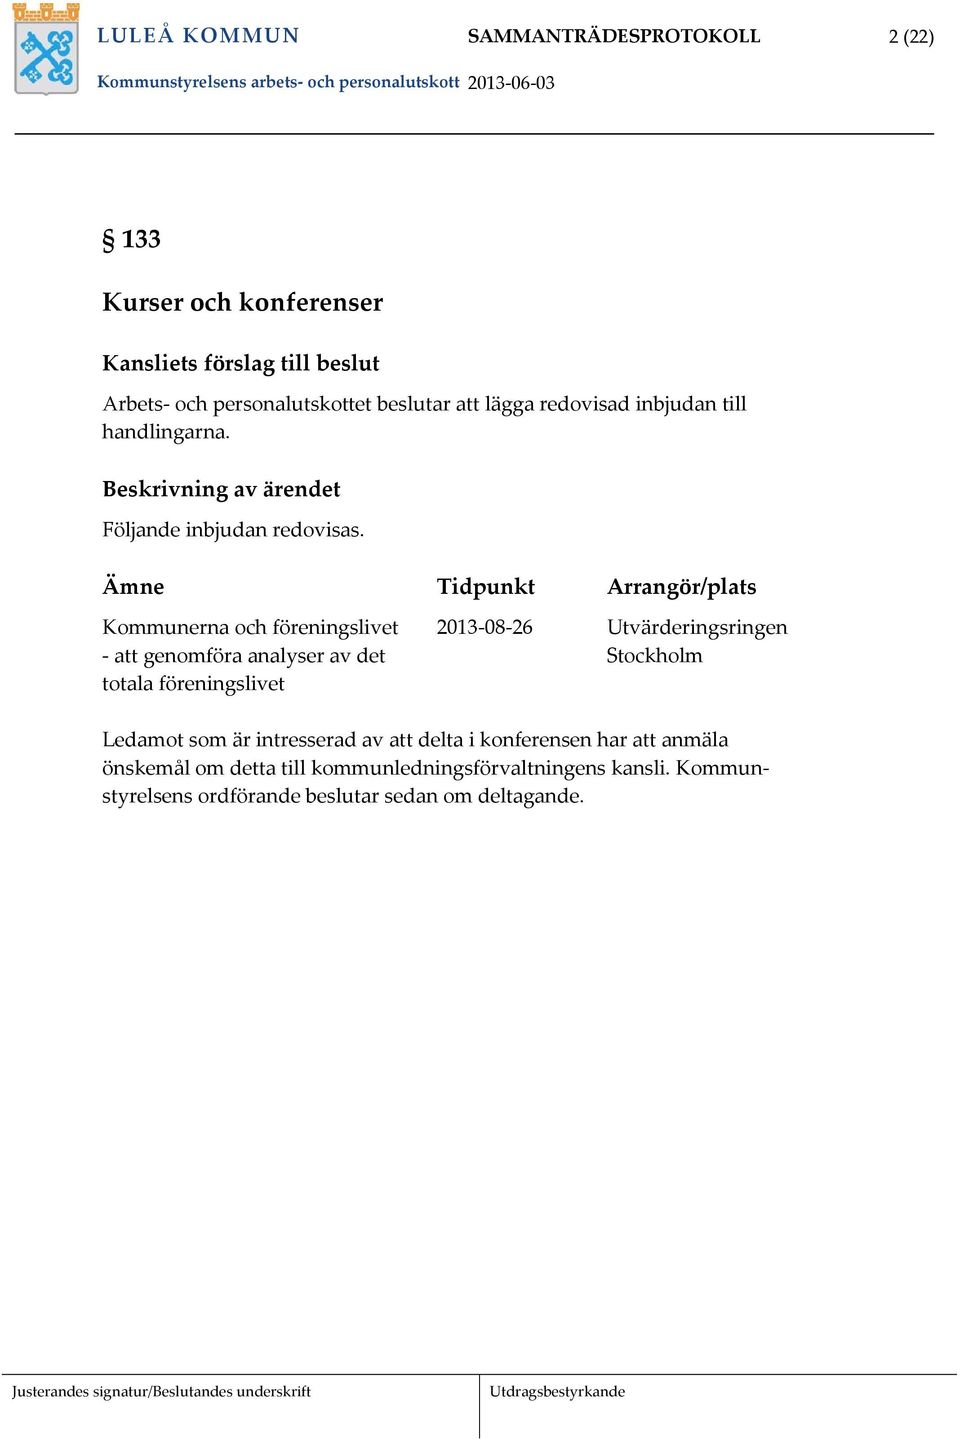 Ämne Tidpunkt Arrangör/plats Kommunerna och föreningslivet 2013 08 26 Utvärderingsringen att genomföra analyser av det Stockholm totala